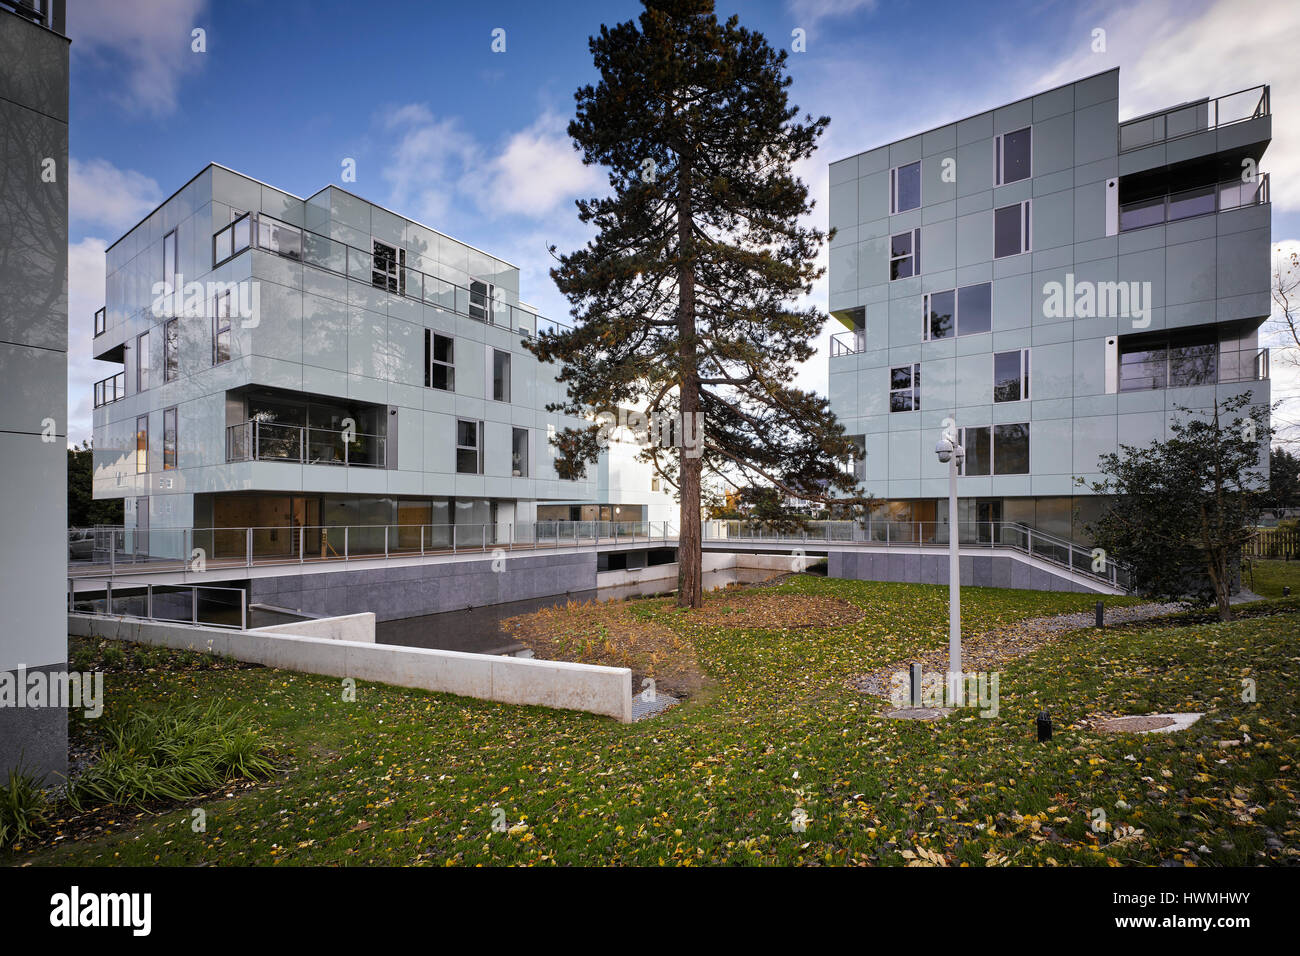 Weiten Blick über Außenfassade mit Glasverkleidung. Dunluce Apartments, Ballsbridge, Irland. Architekt: Derek Tynan Architekten, 2016. Stockfoto